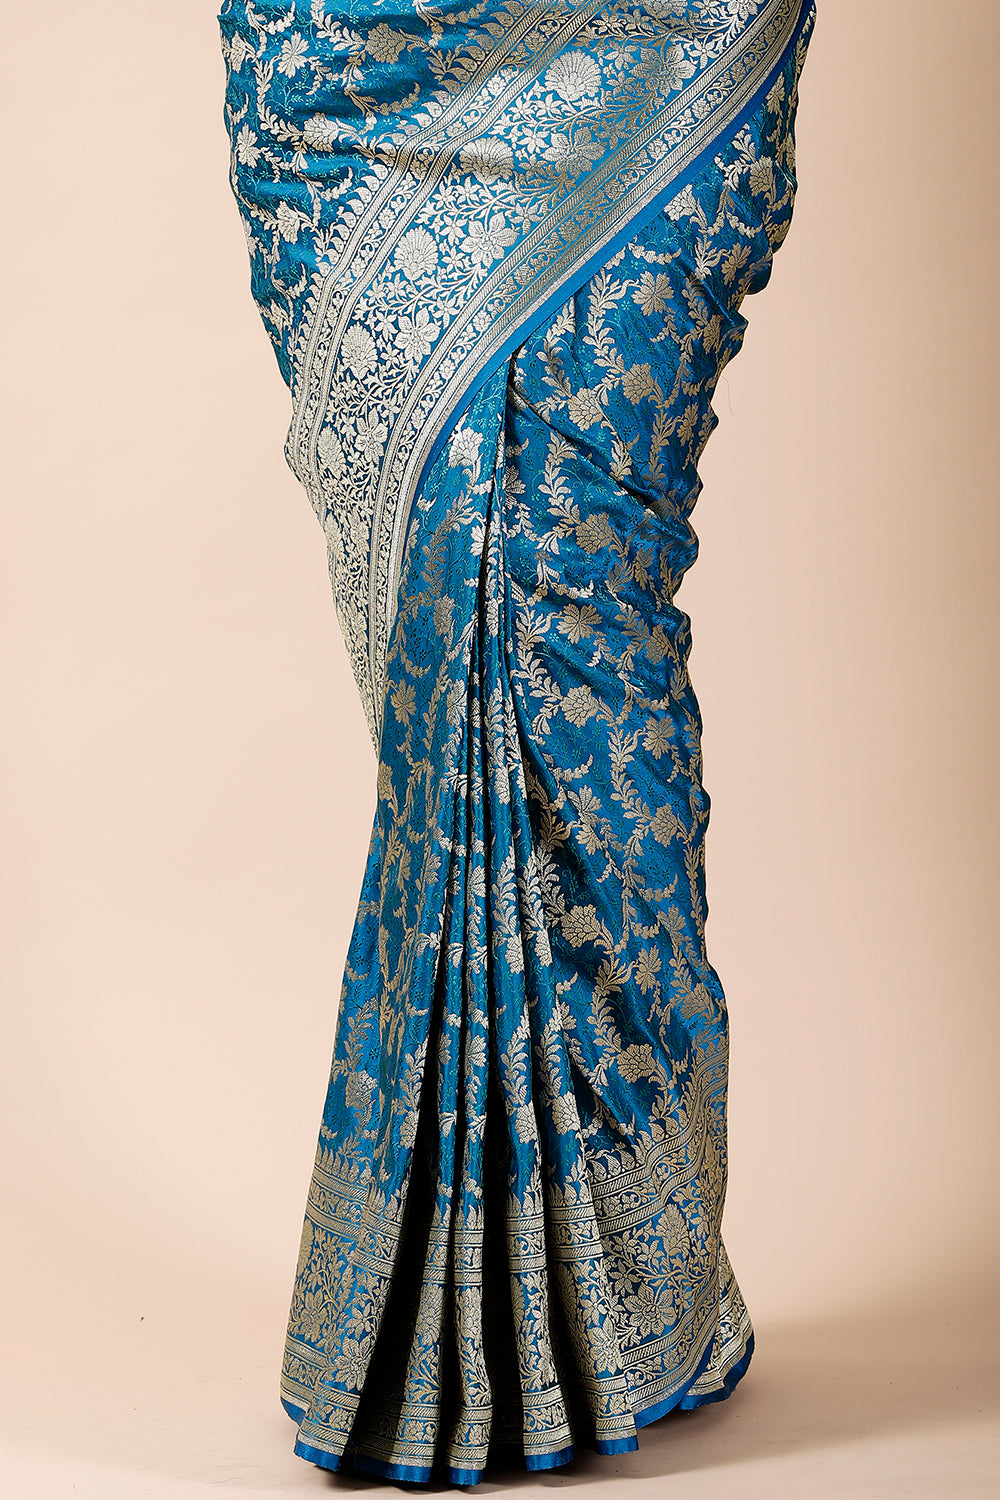 Blue Color Banarsi Silk Weaving Saree